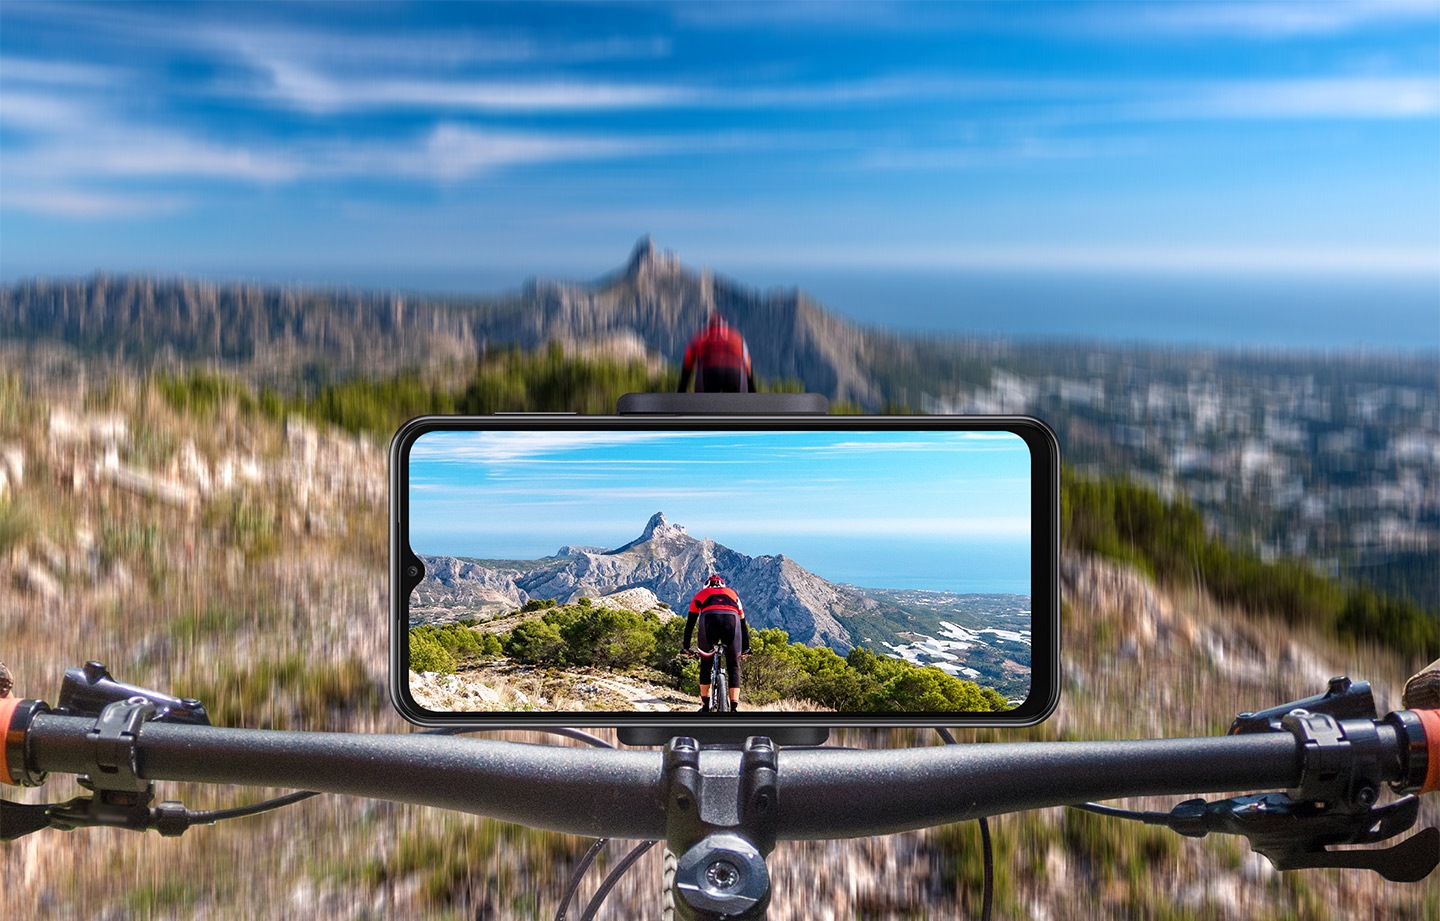 تلفن Galaxy A23 در حالت افقی روی فرمان دوچرخه نصب شده است. در جلو، یک زمین کوهستانی تار نشان داده می‌شود و روی صفحه نمایش تلفن، تصویر واضحی از زمین و همچنین دوچرخه‌سوار جلویی ثبت شده است.